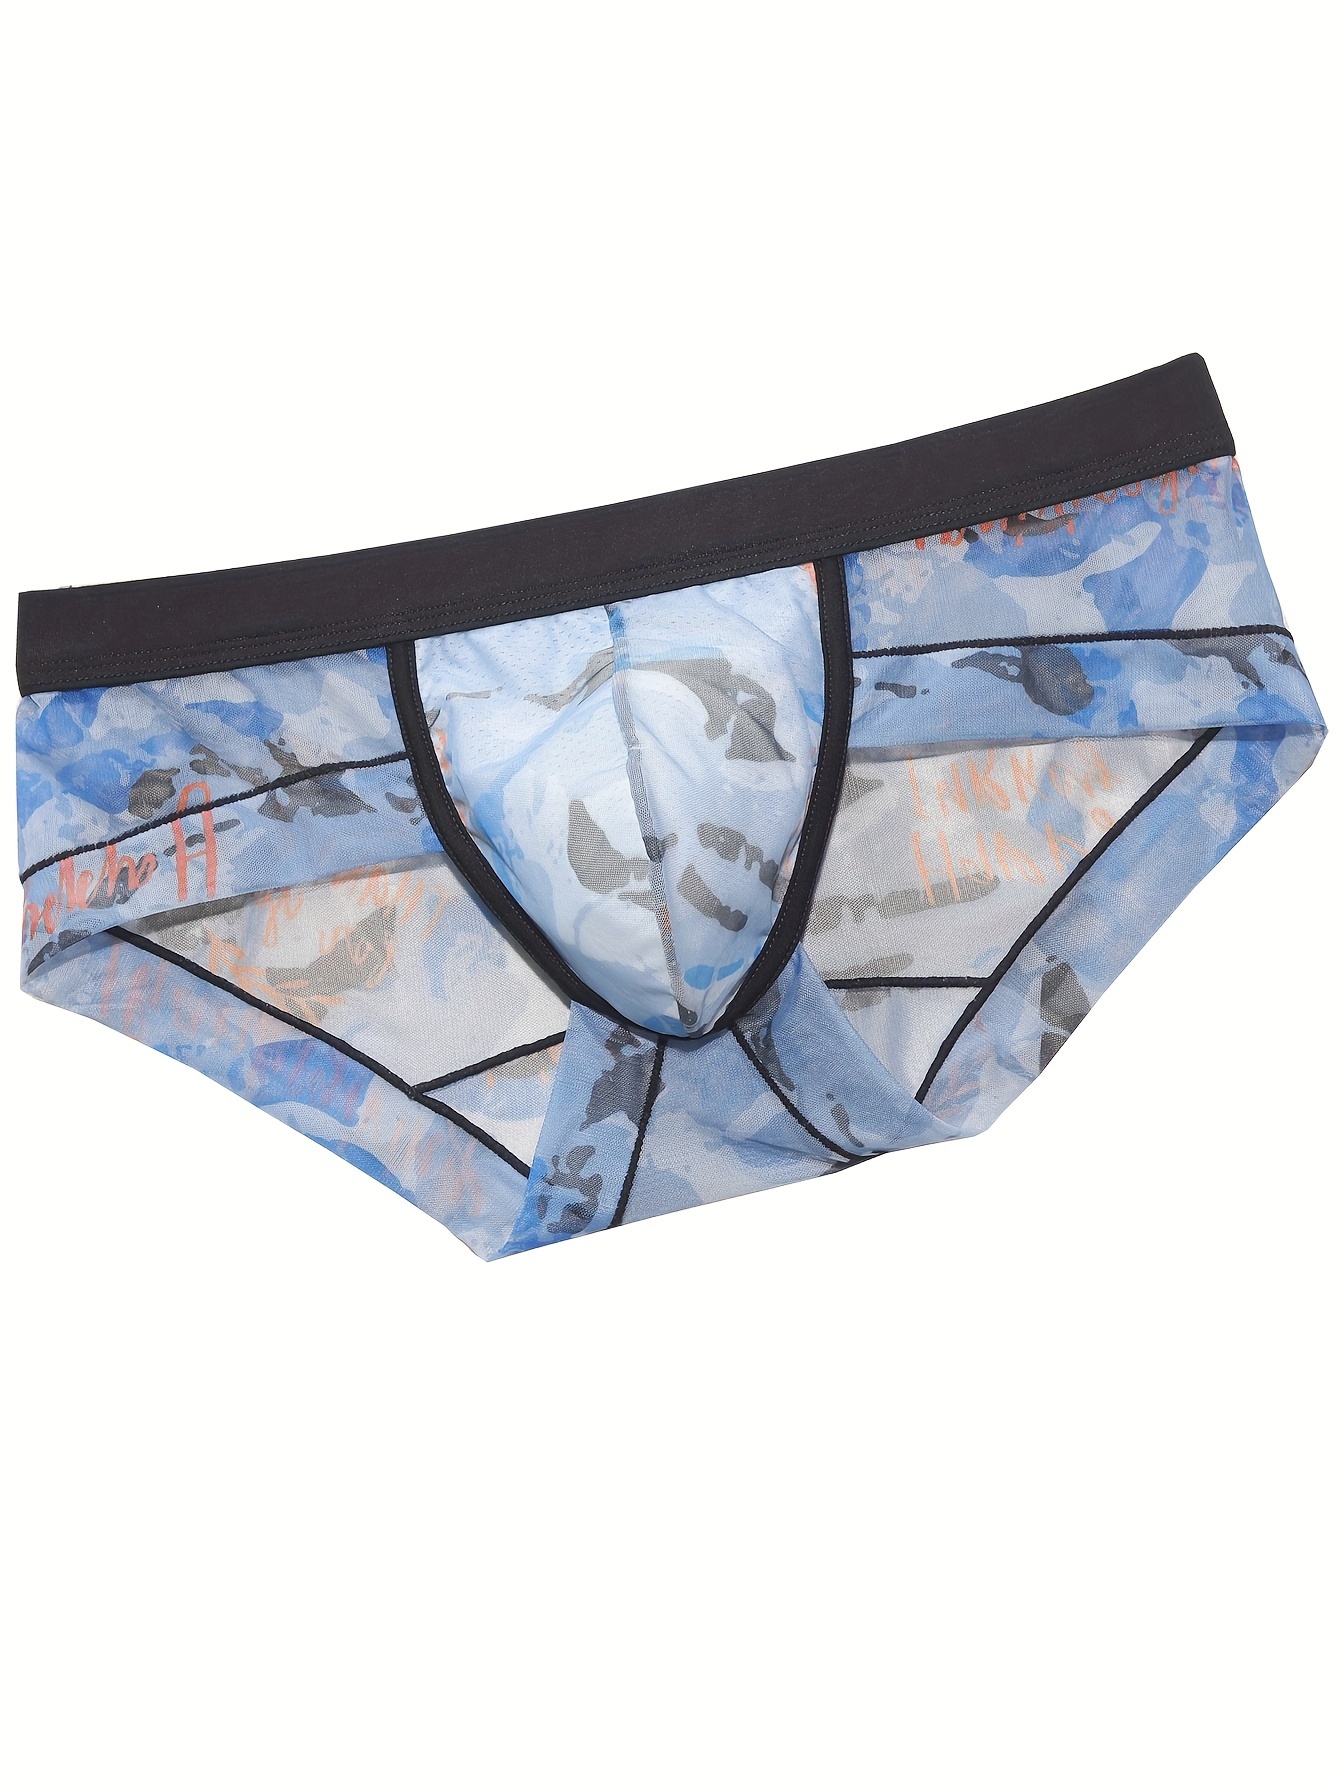 Men's Briefs Underwear Fashion Low Waist Breathable Comfy - Temu